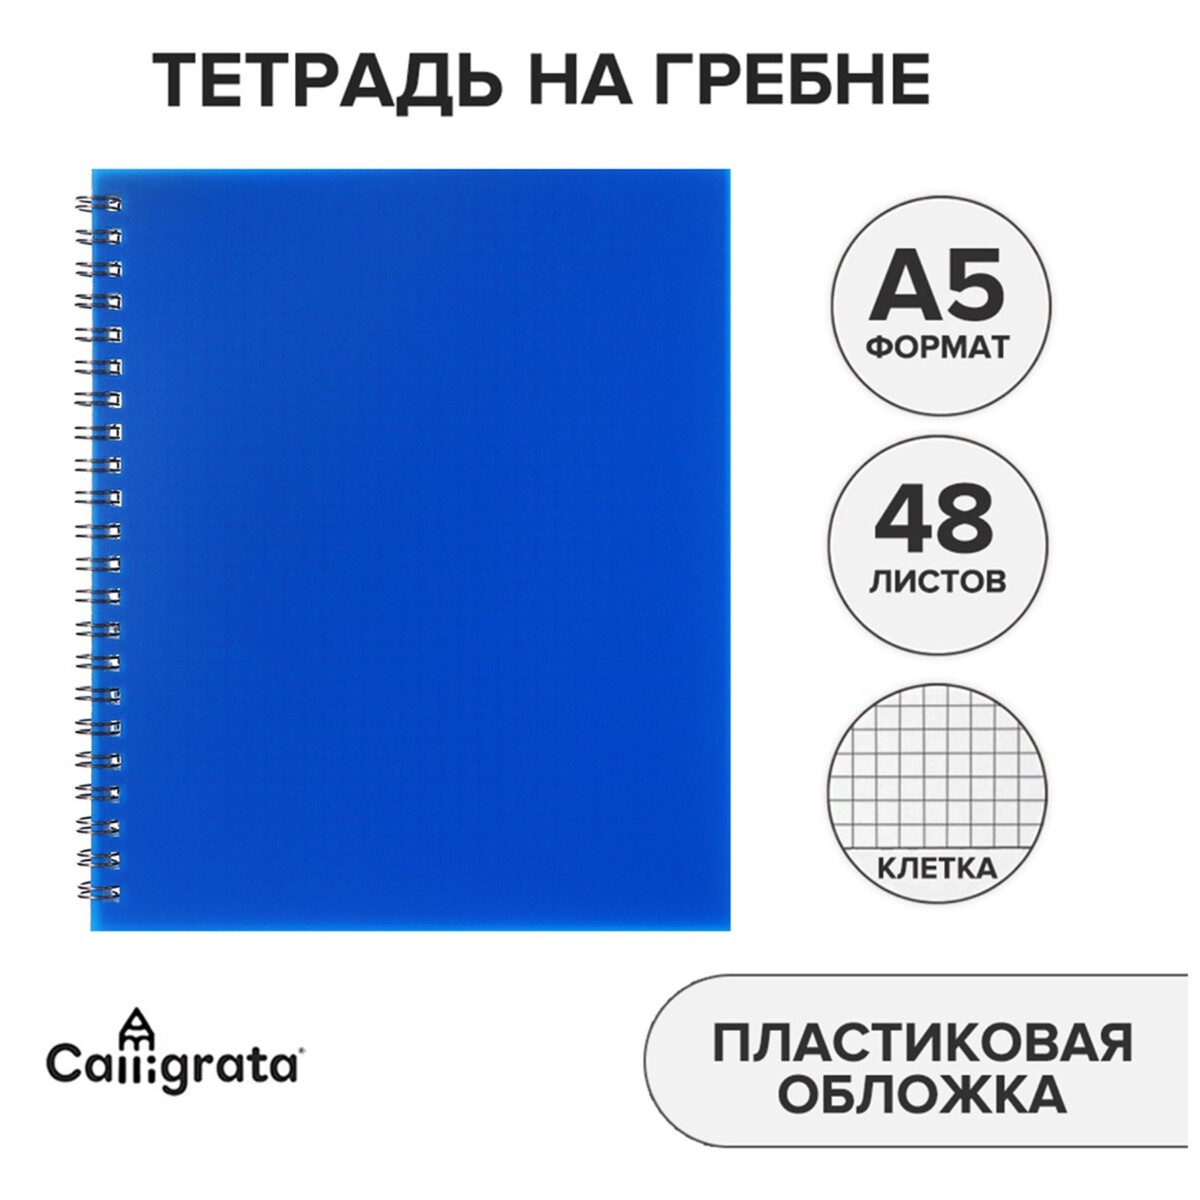 Тетрадь на гребне a5 48 листов в клетку calligrata синяя, пластиковая обложка, блок офсет